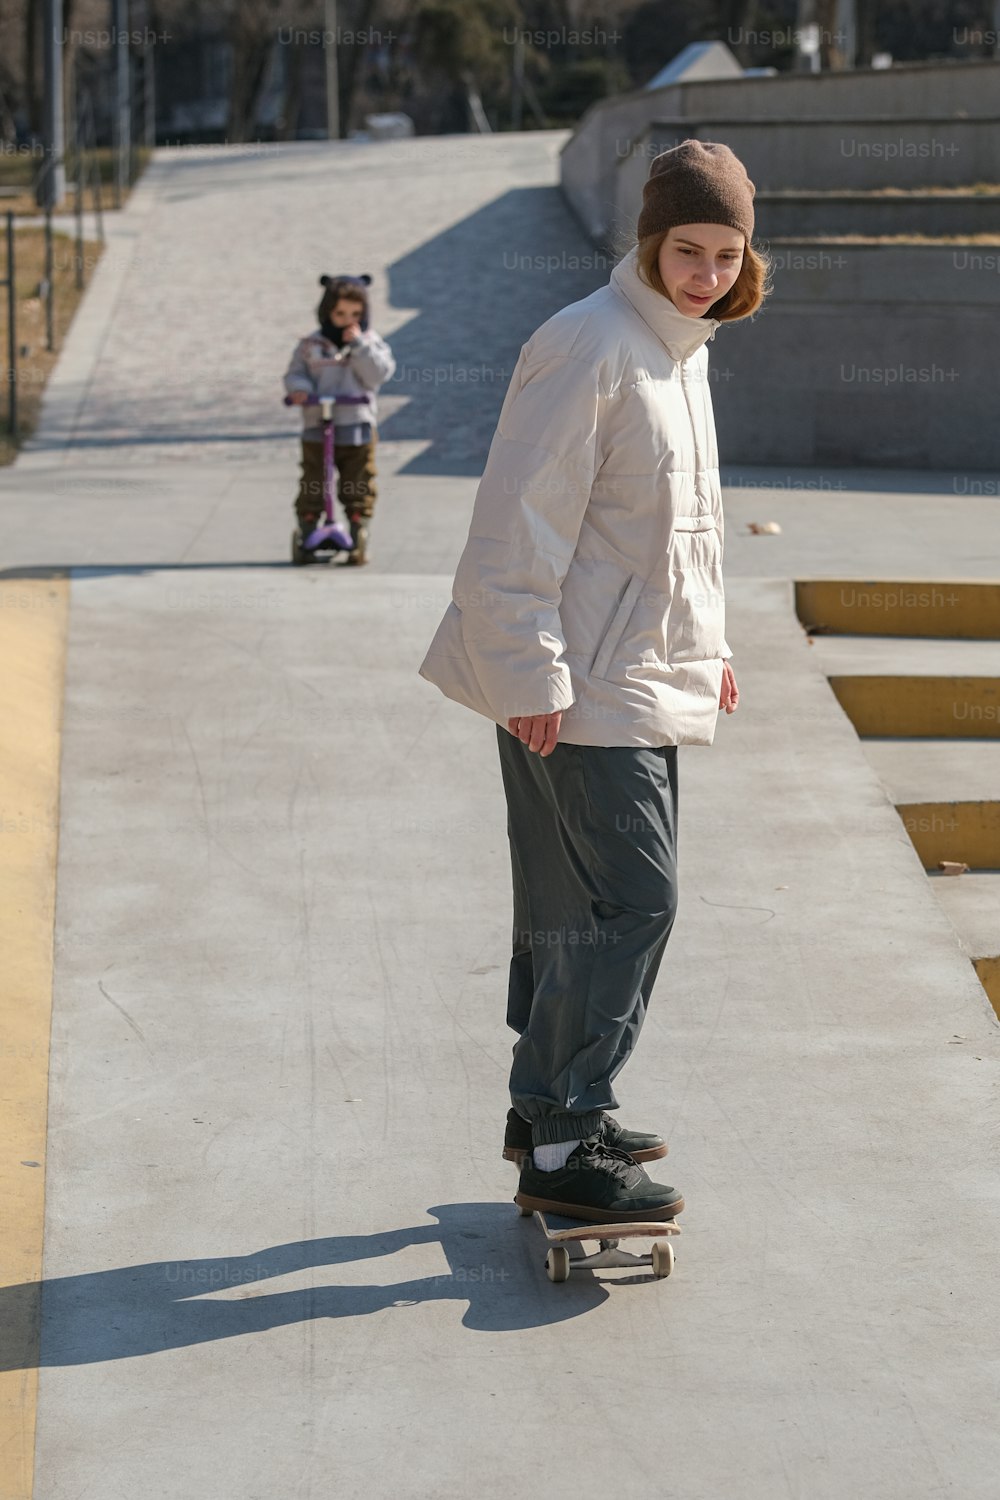 Ein junger Mann fährt mit einem Skateboard einen Bürgersteig hinunter